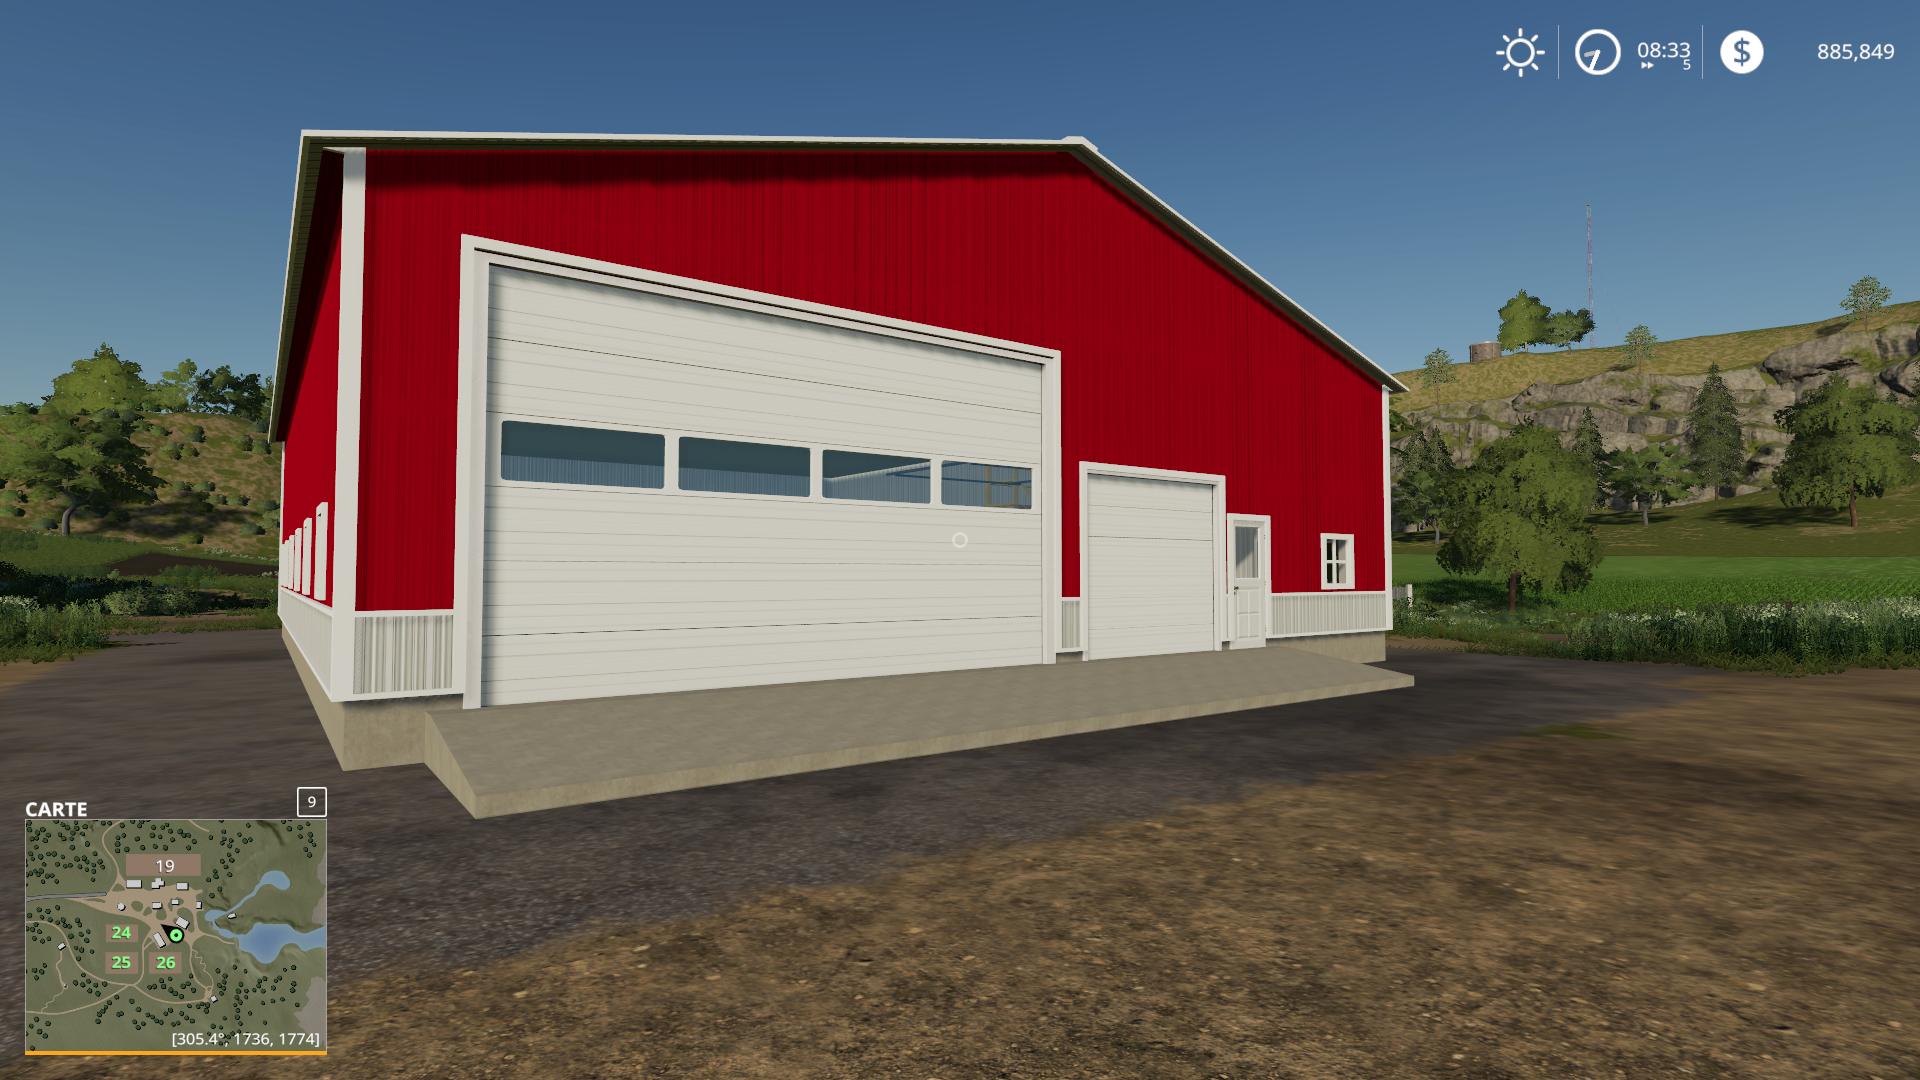 Fs19 3 Car Garage V1000 Farming Simulator 2022 Mod Ls 2022 Mod Images And Photos Finder 0916